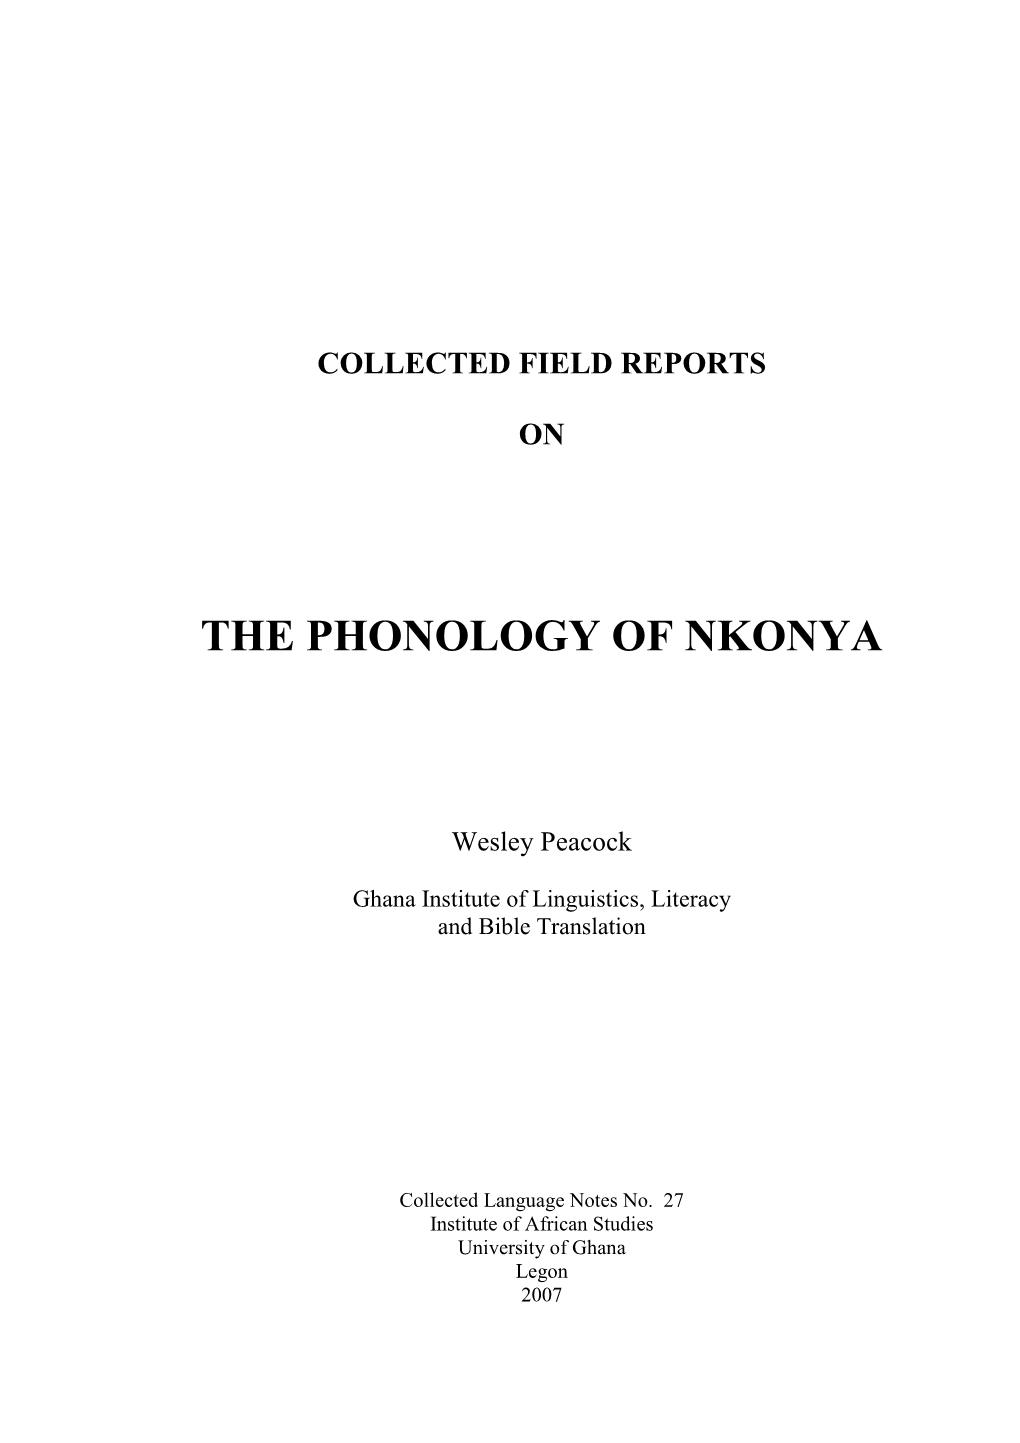 The Phonology of Nkonya